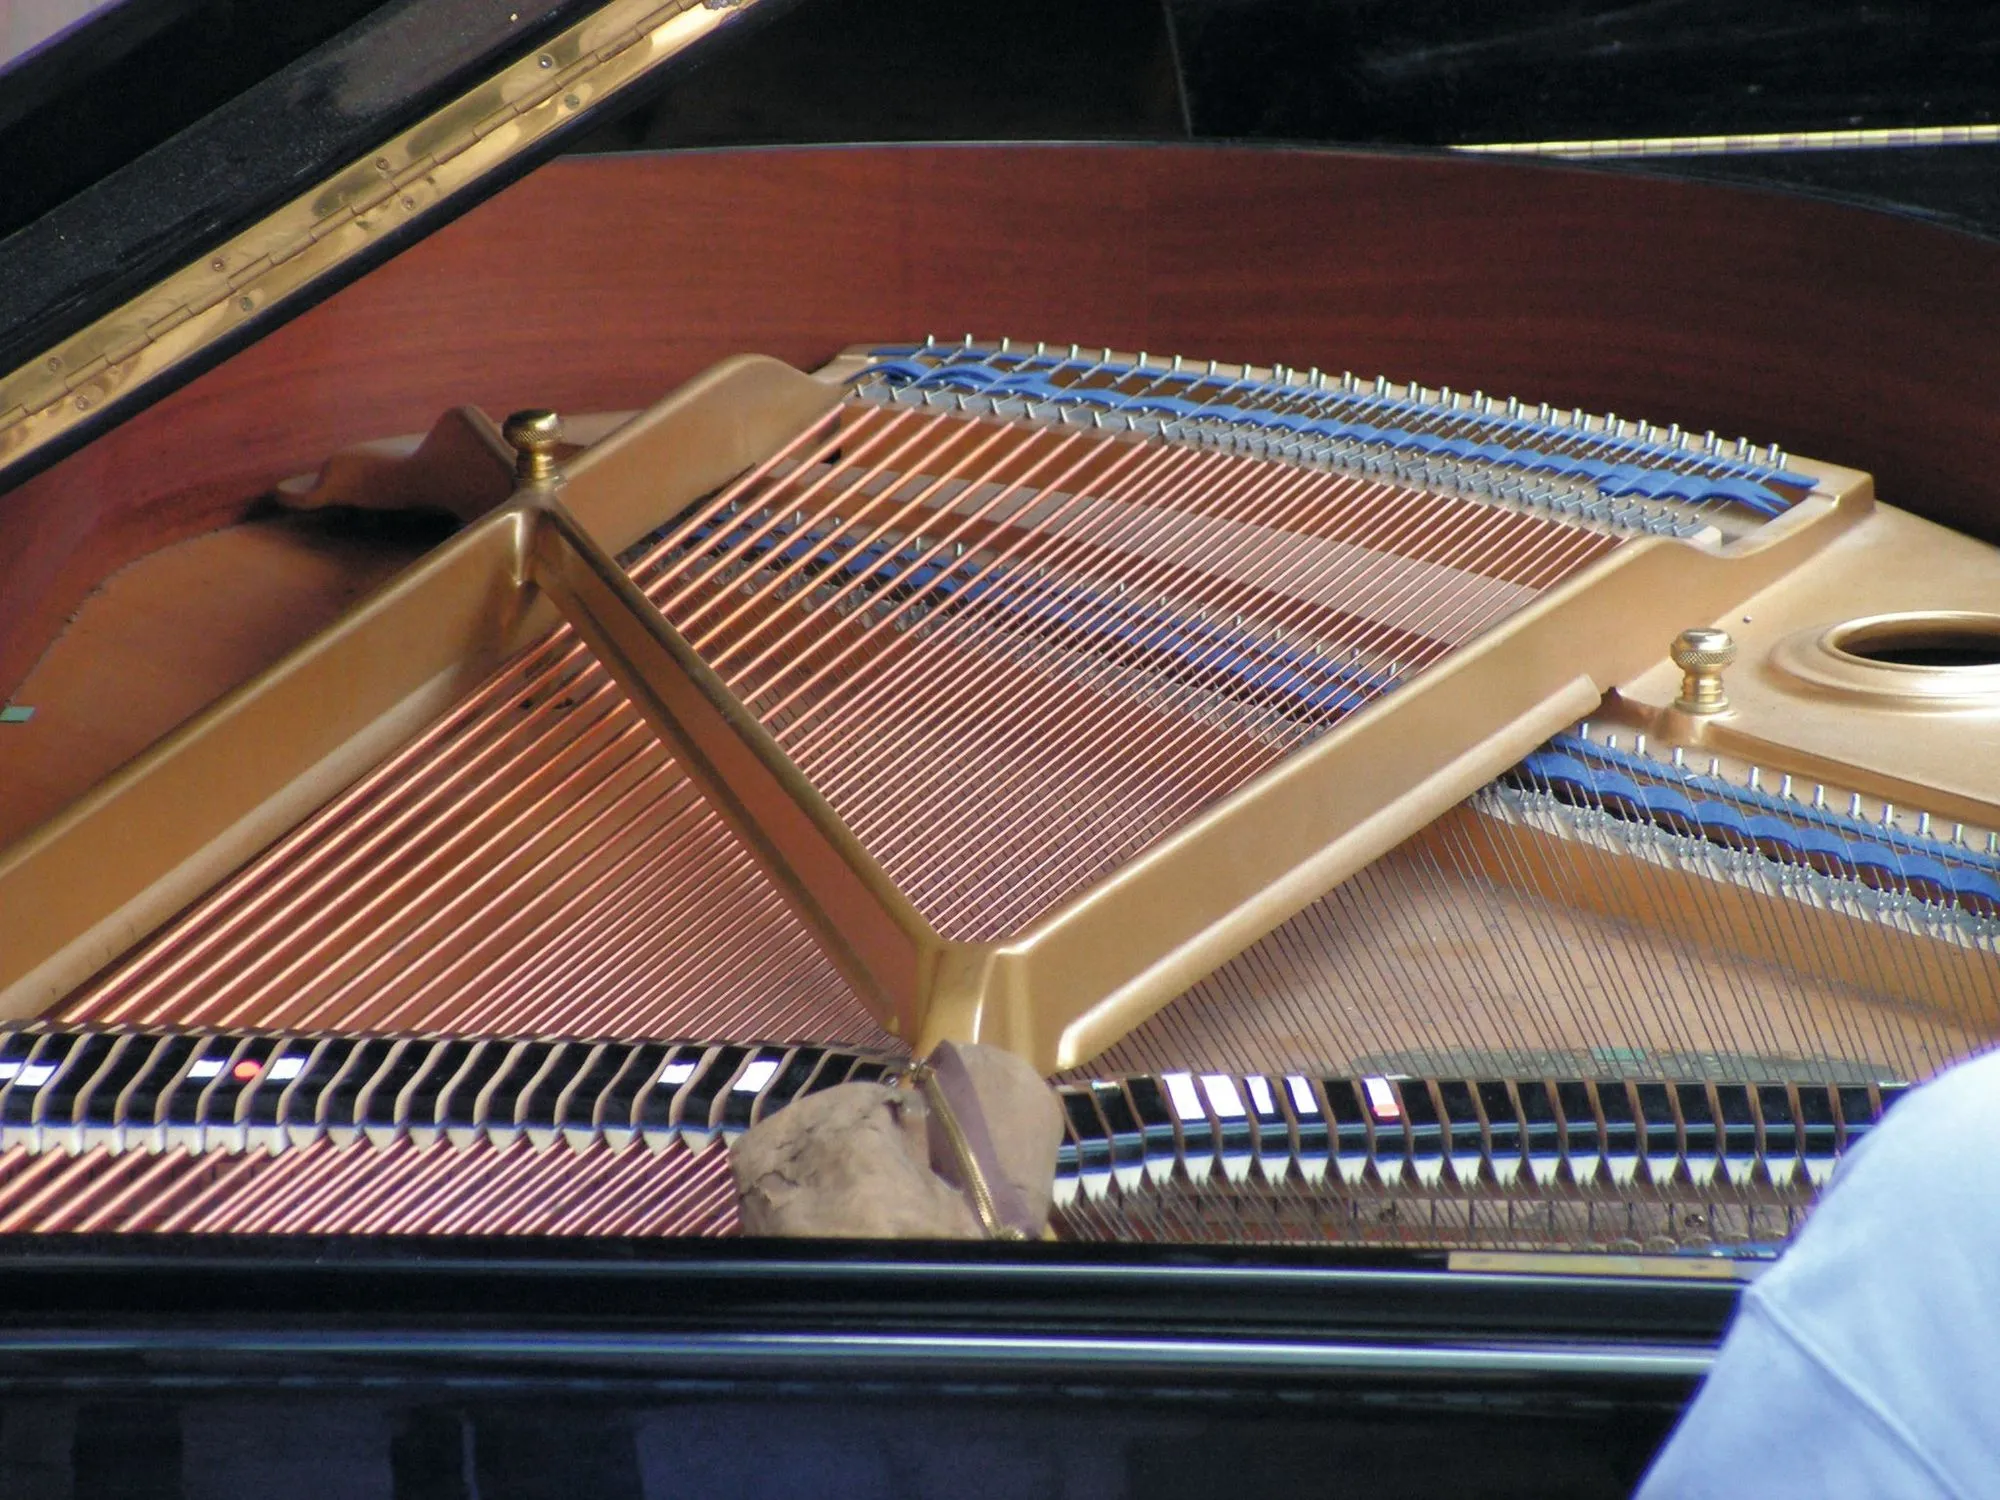 Cordes tendues dans un piano à queue